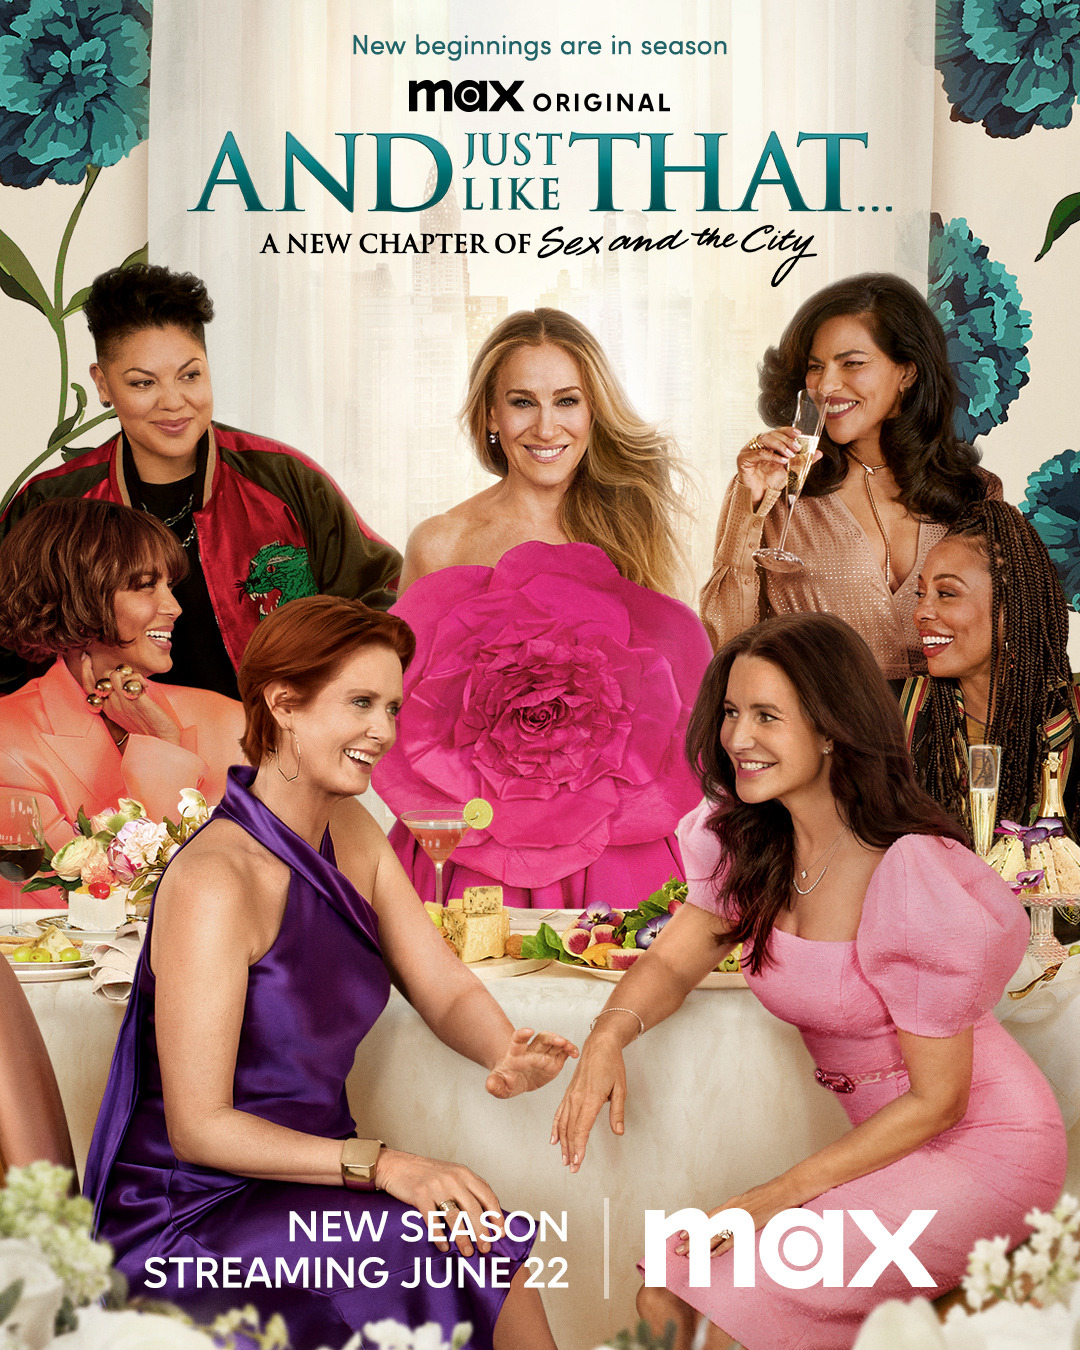 Affiche promotionnelle de la saison 2 avec toutes les femmes de la série.